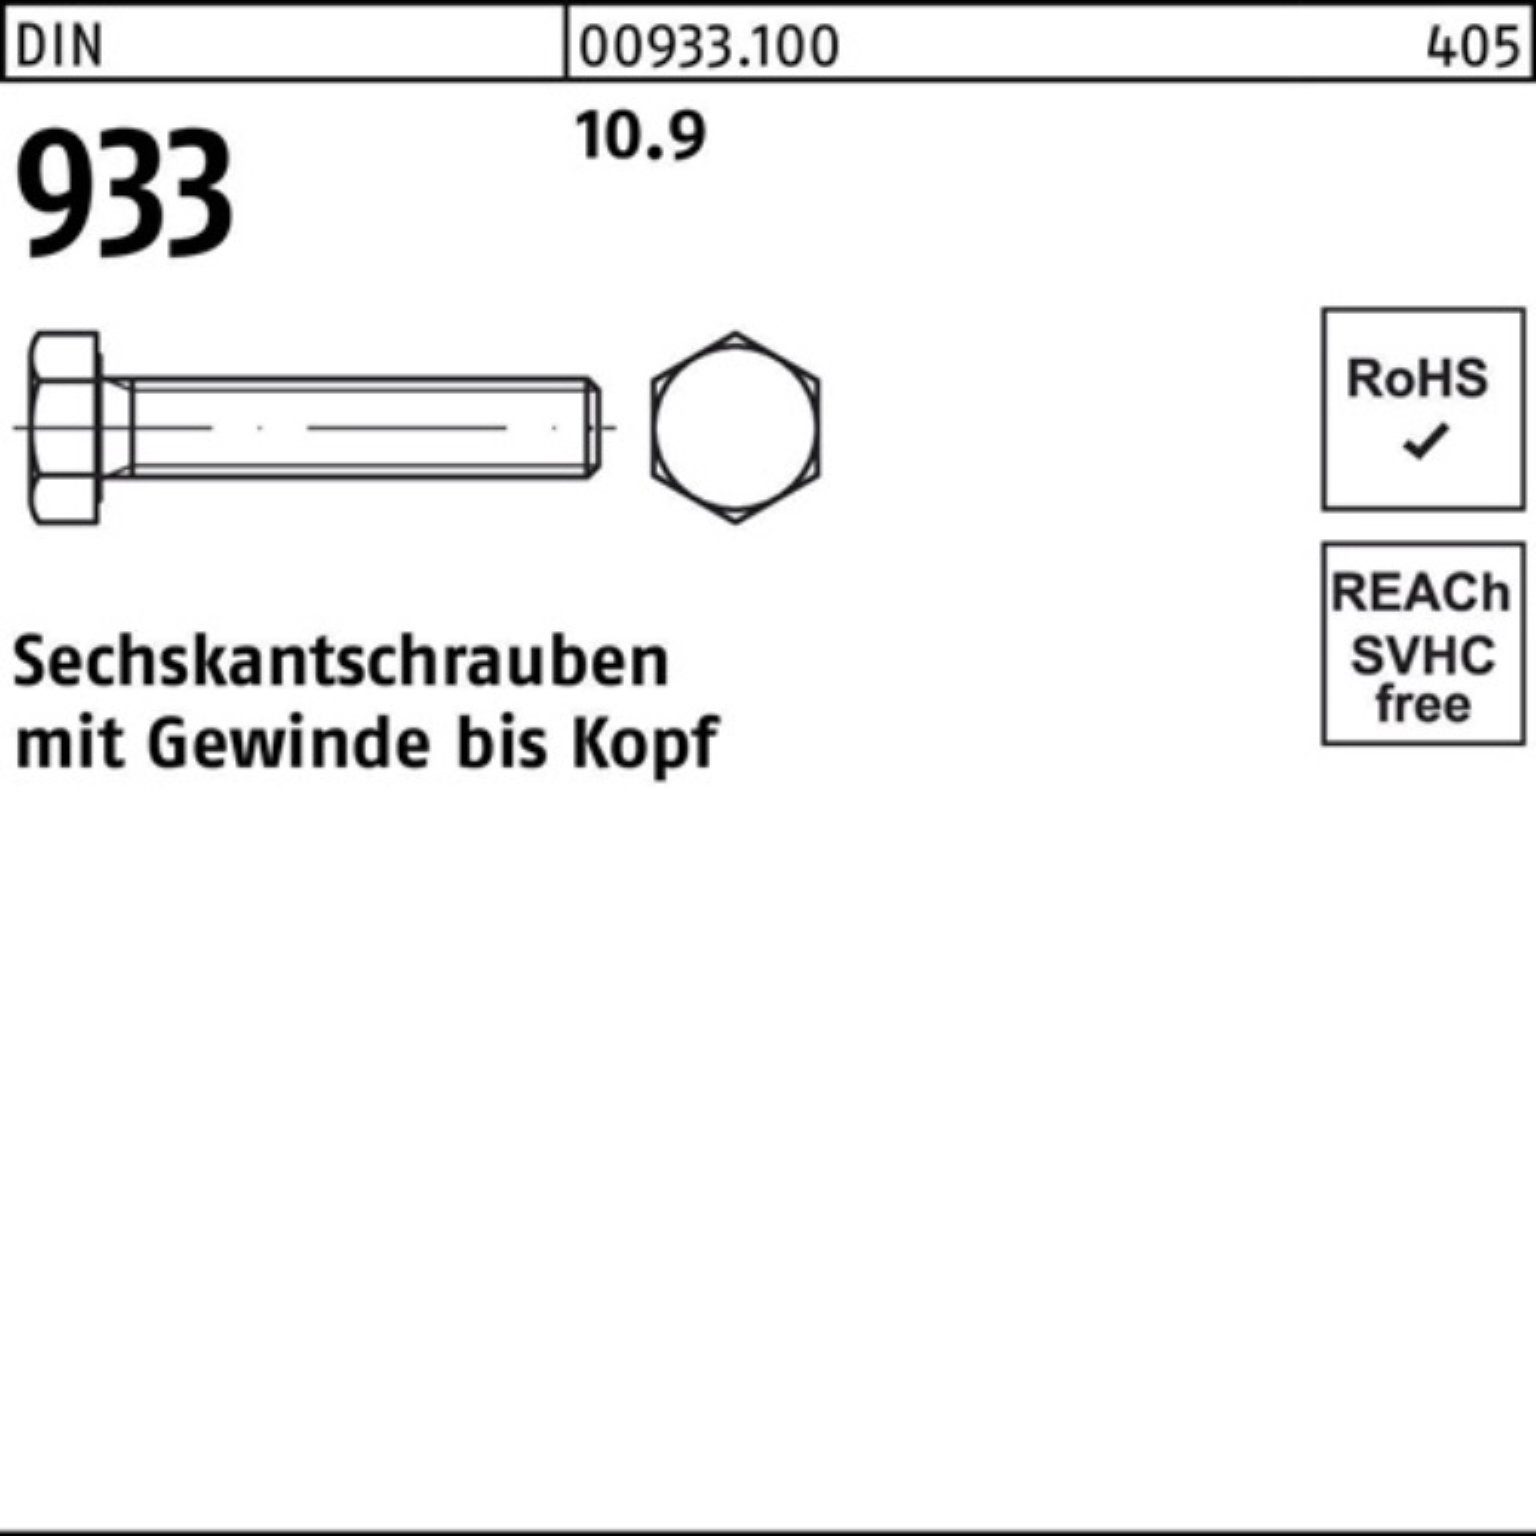 Reyher Sechskantschraube 100er 25 933 933 DIN M22x Sechskantschraube DIN Stück 10.9 Pack VG 80